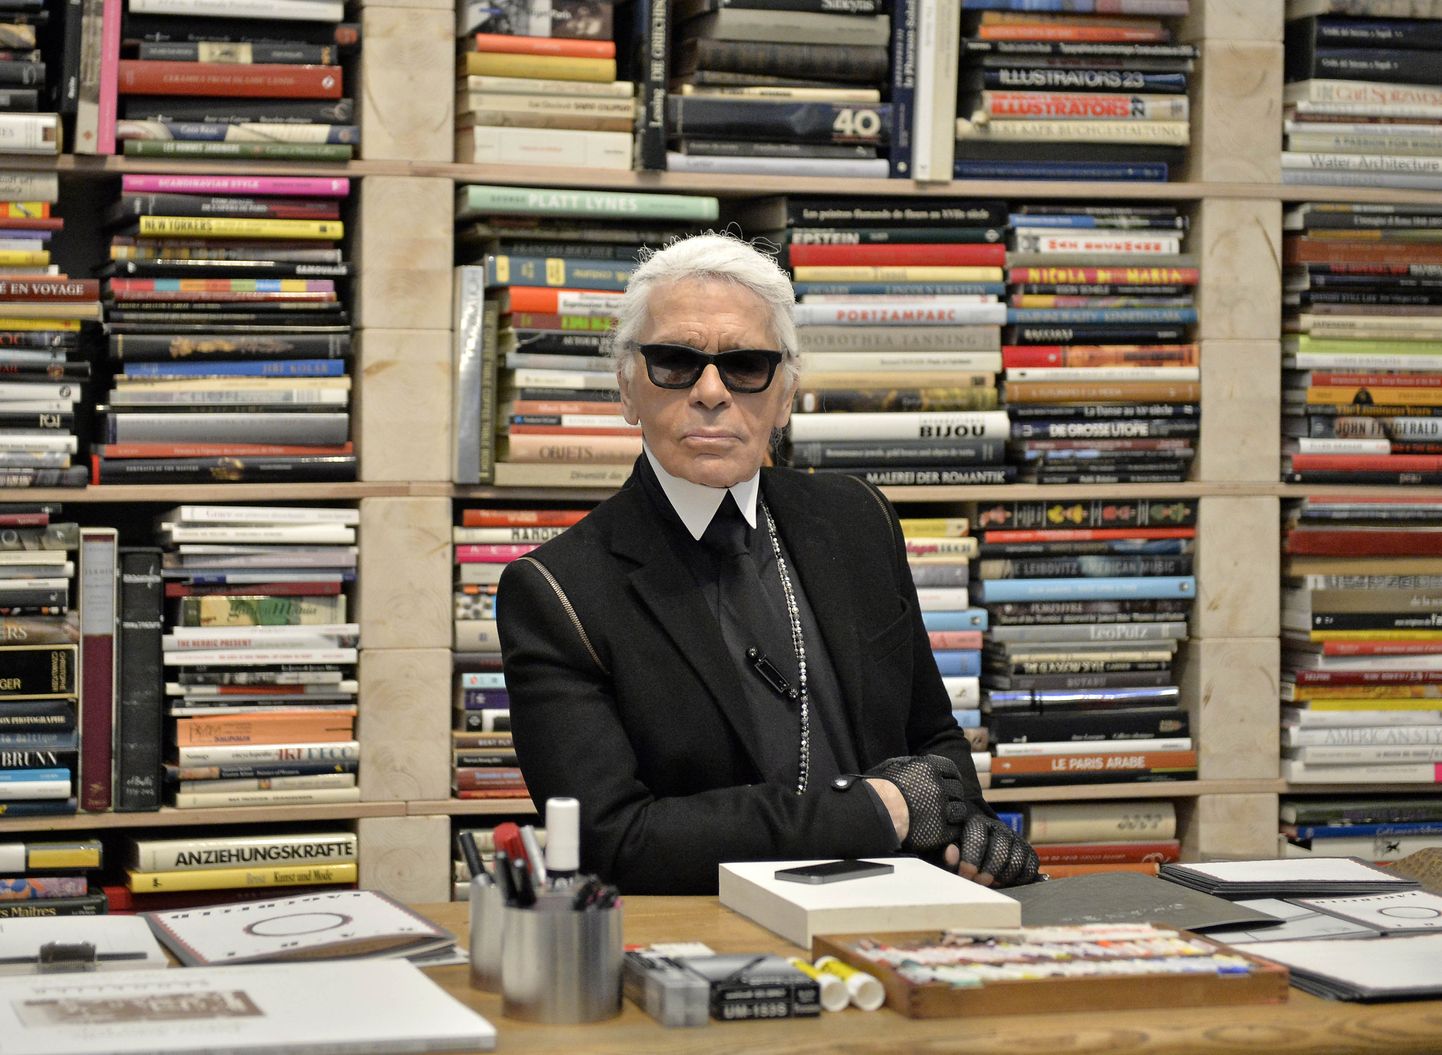 Moelooja Karl Lagerfeld oma raamaturiiuli taustal.